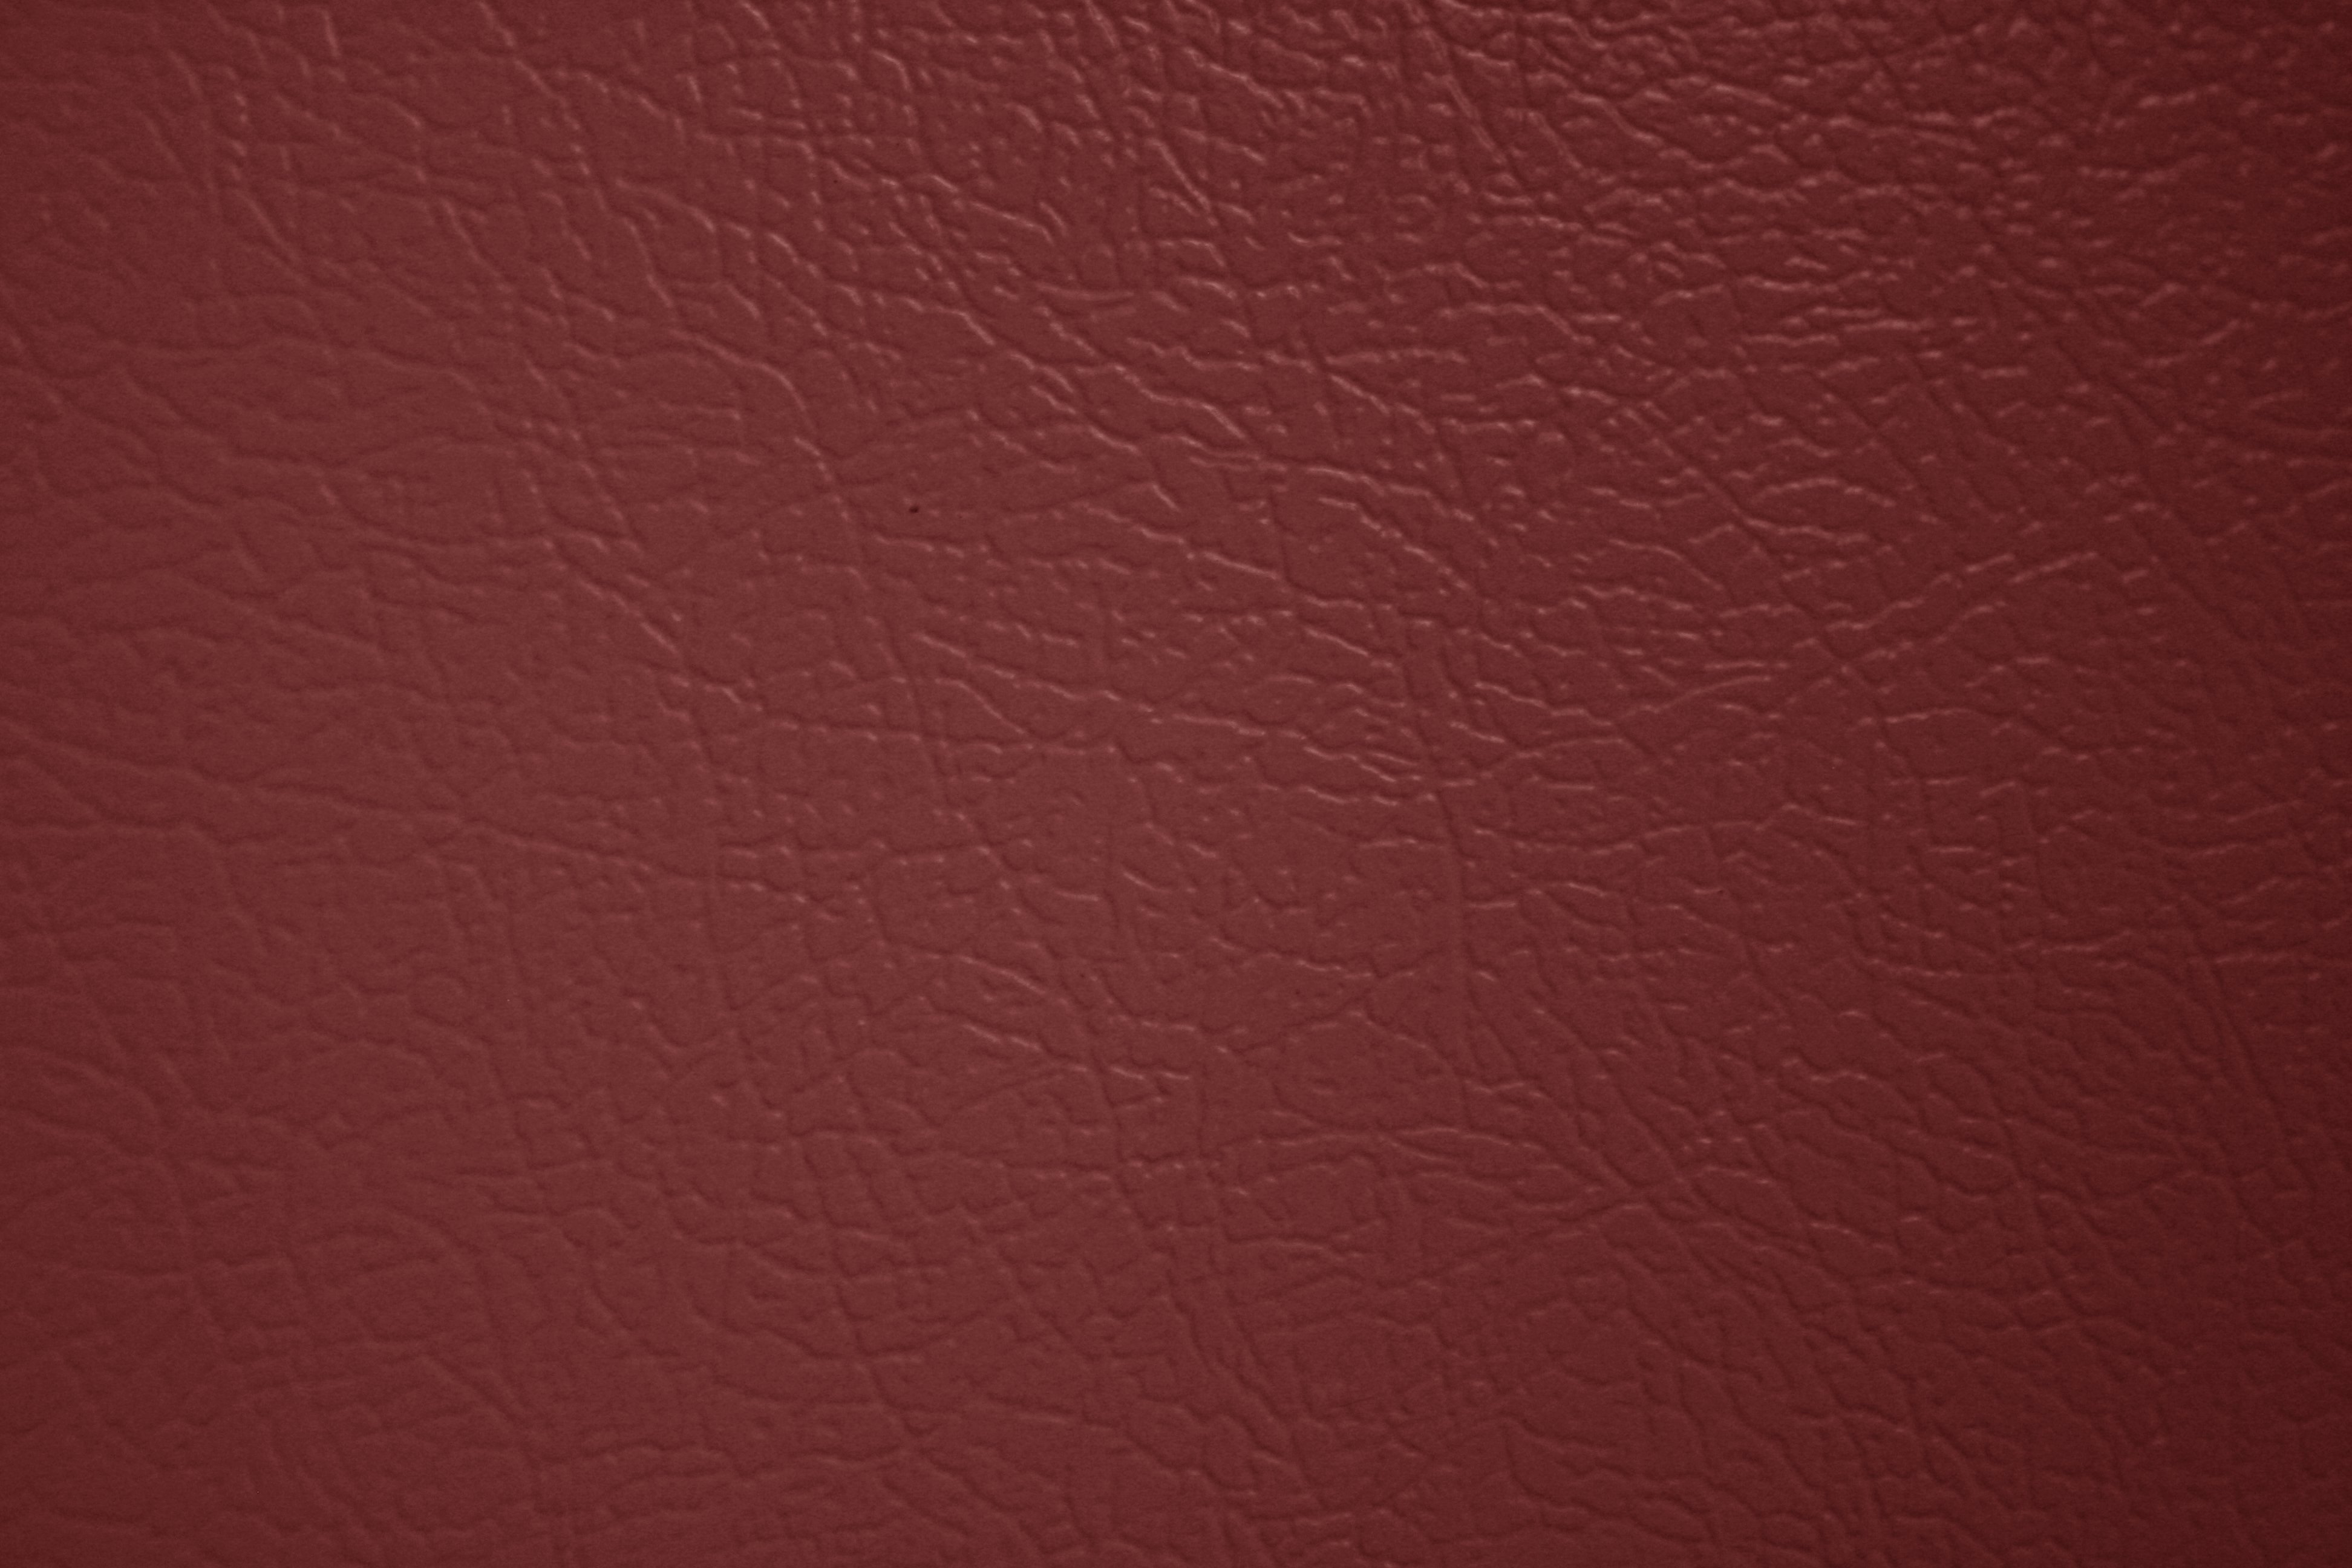 Maroon Faux Leather Texture Picture Photograph Photos Public